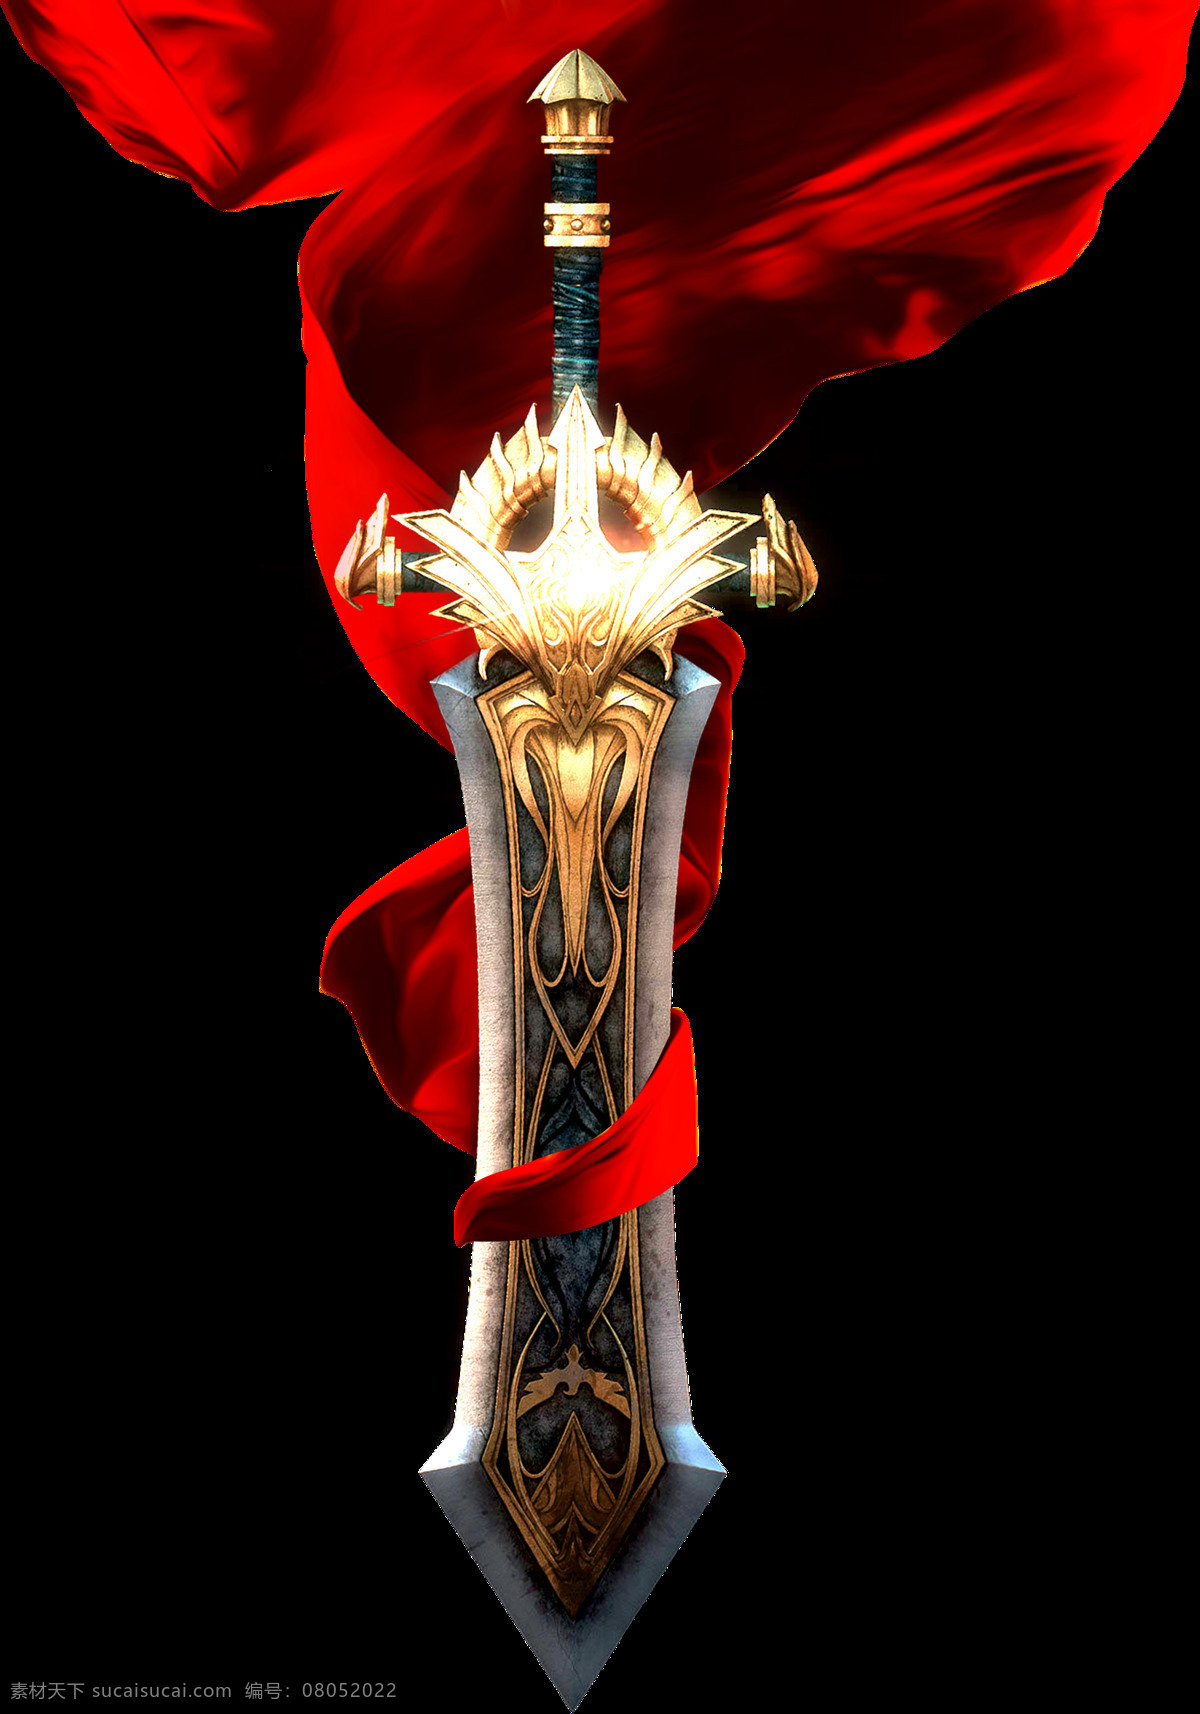 兵器宝剑红绸 宝剑 剑 宝剑红绸 兵器 军令状剑